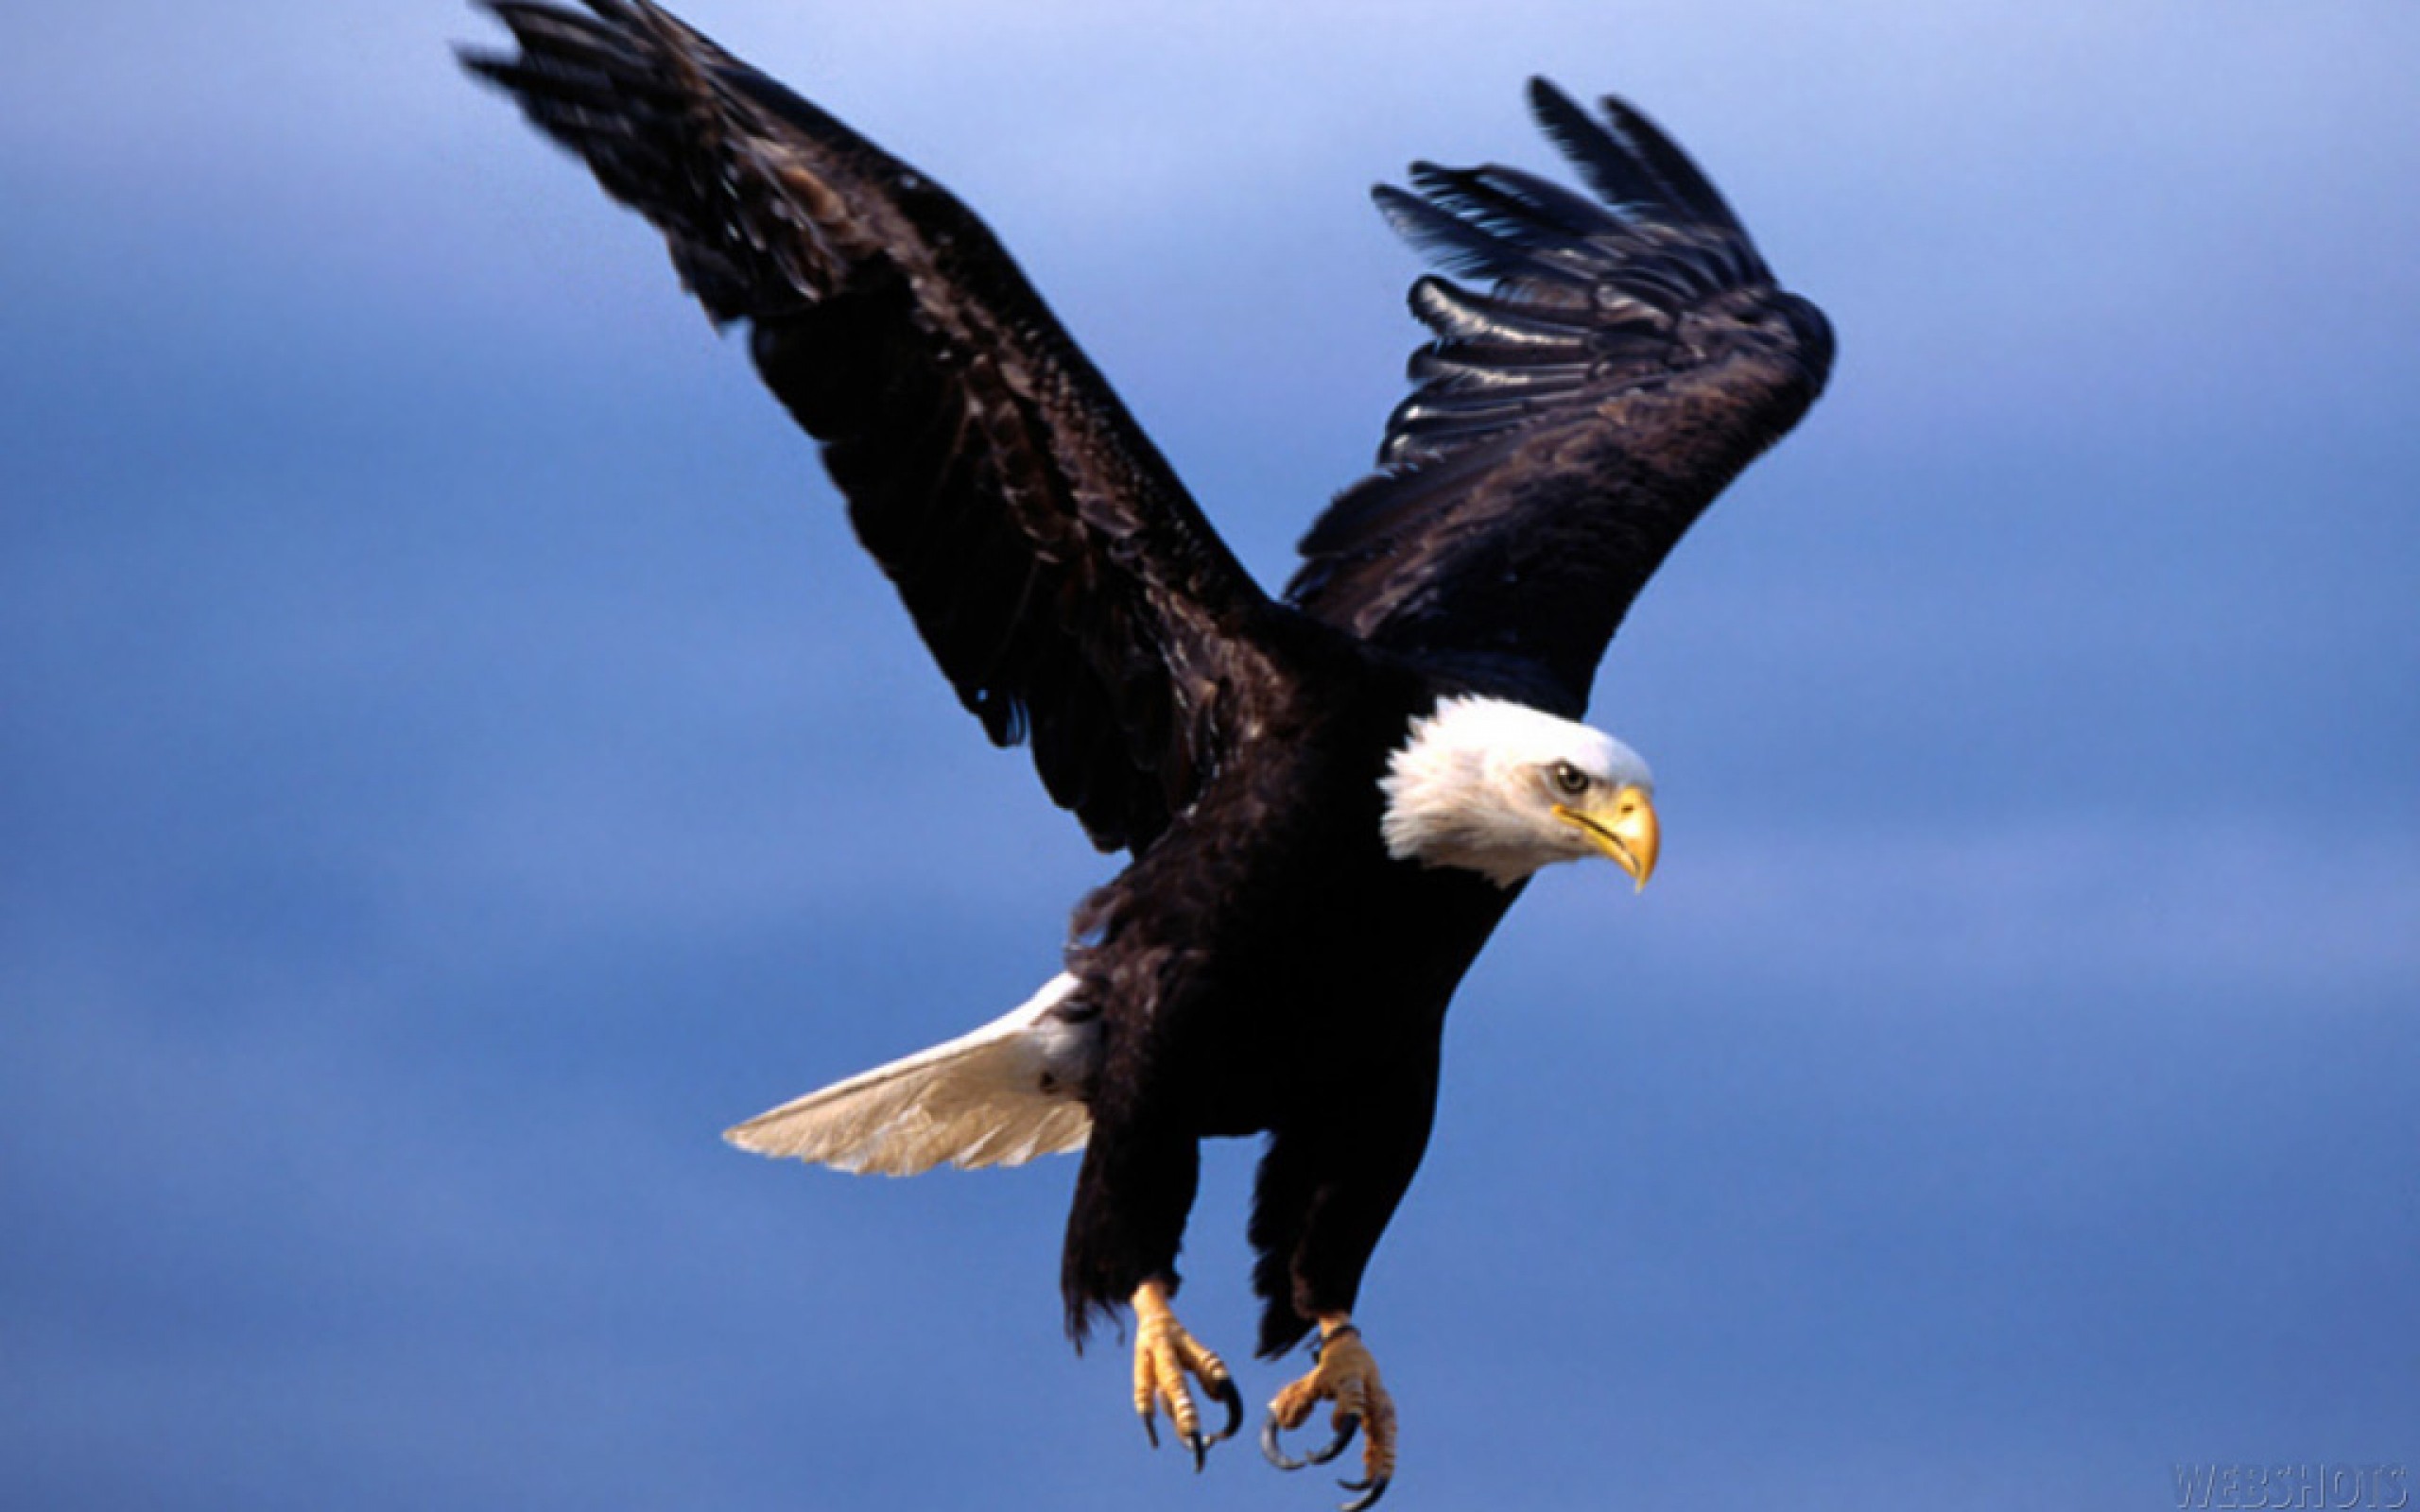 brown flying eagle image